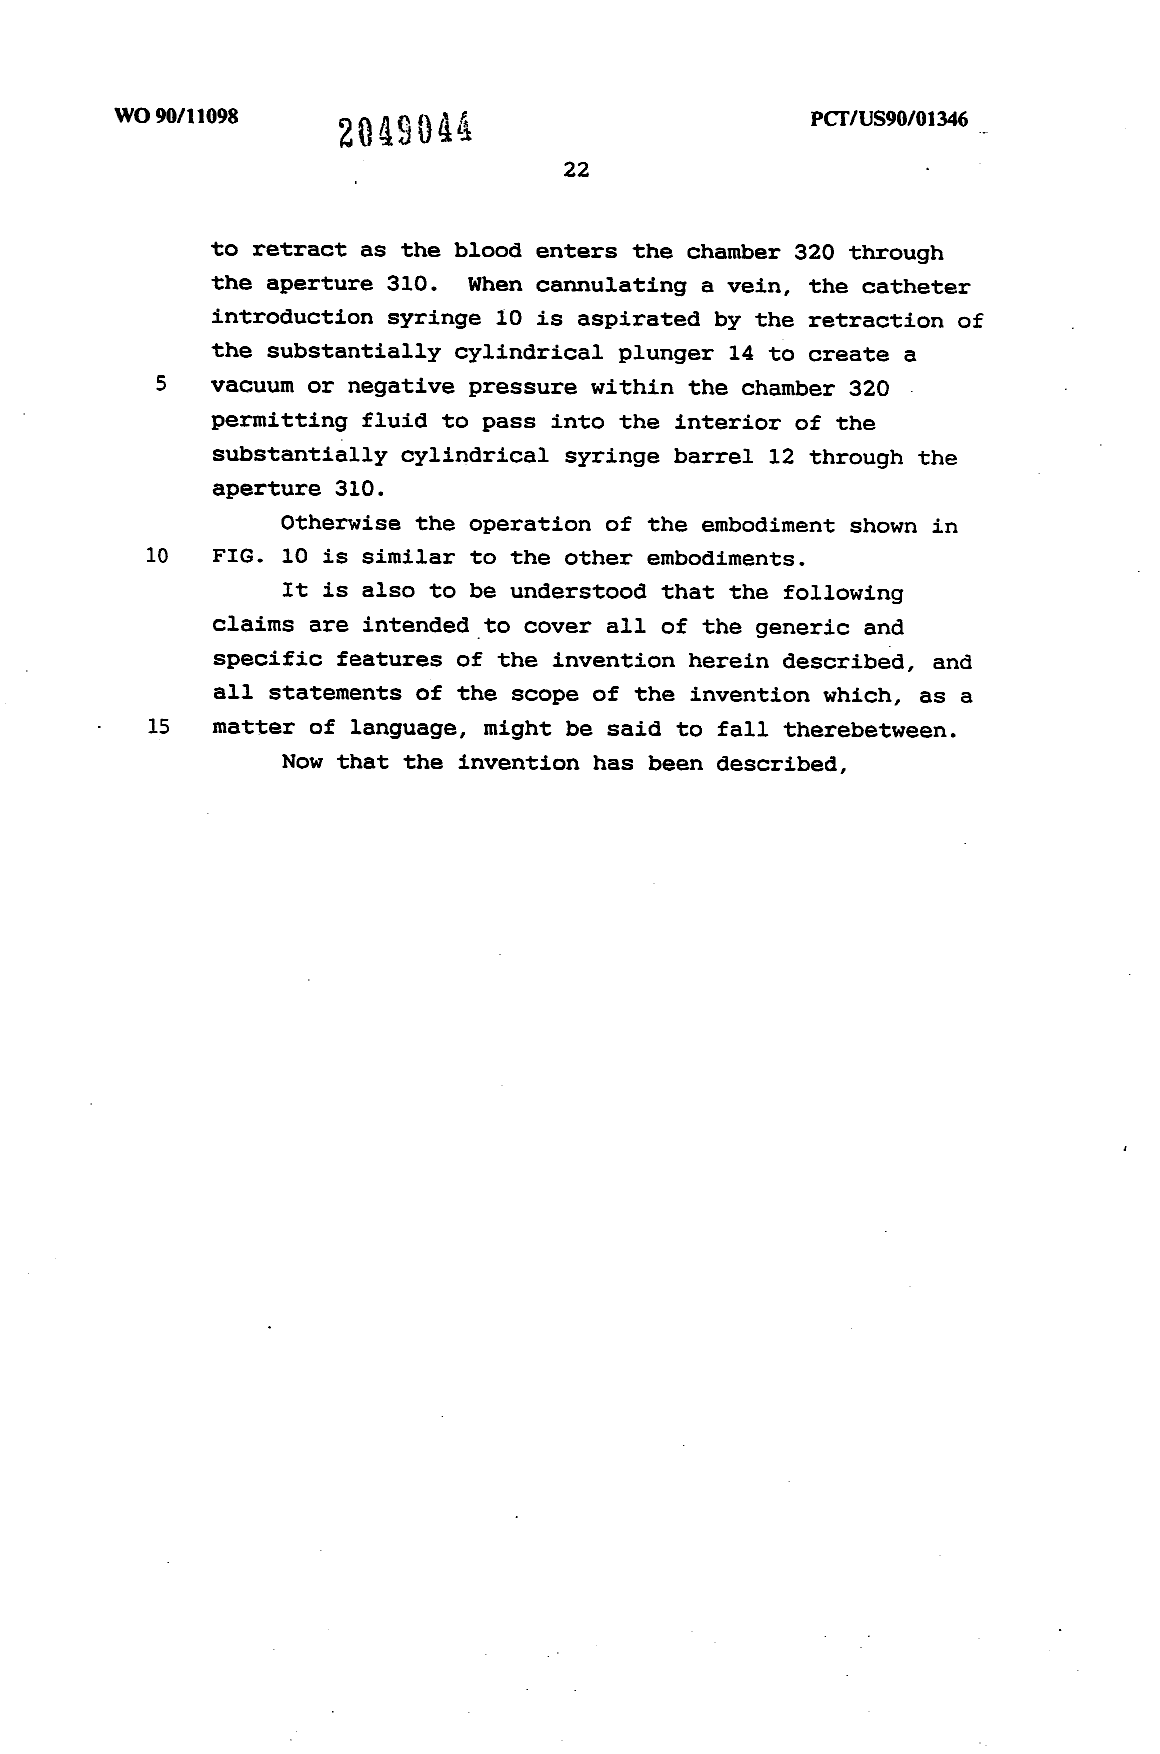 Canadian Patent Document 2049044. Description 19940521. Image 22 of 22